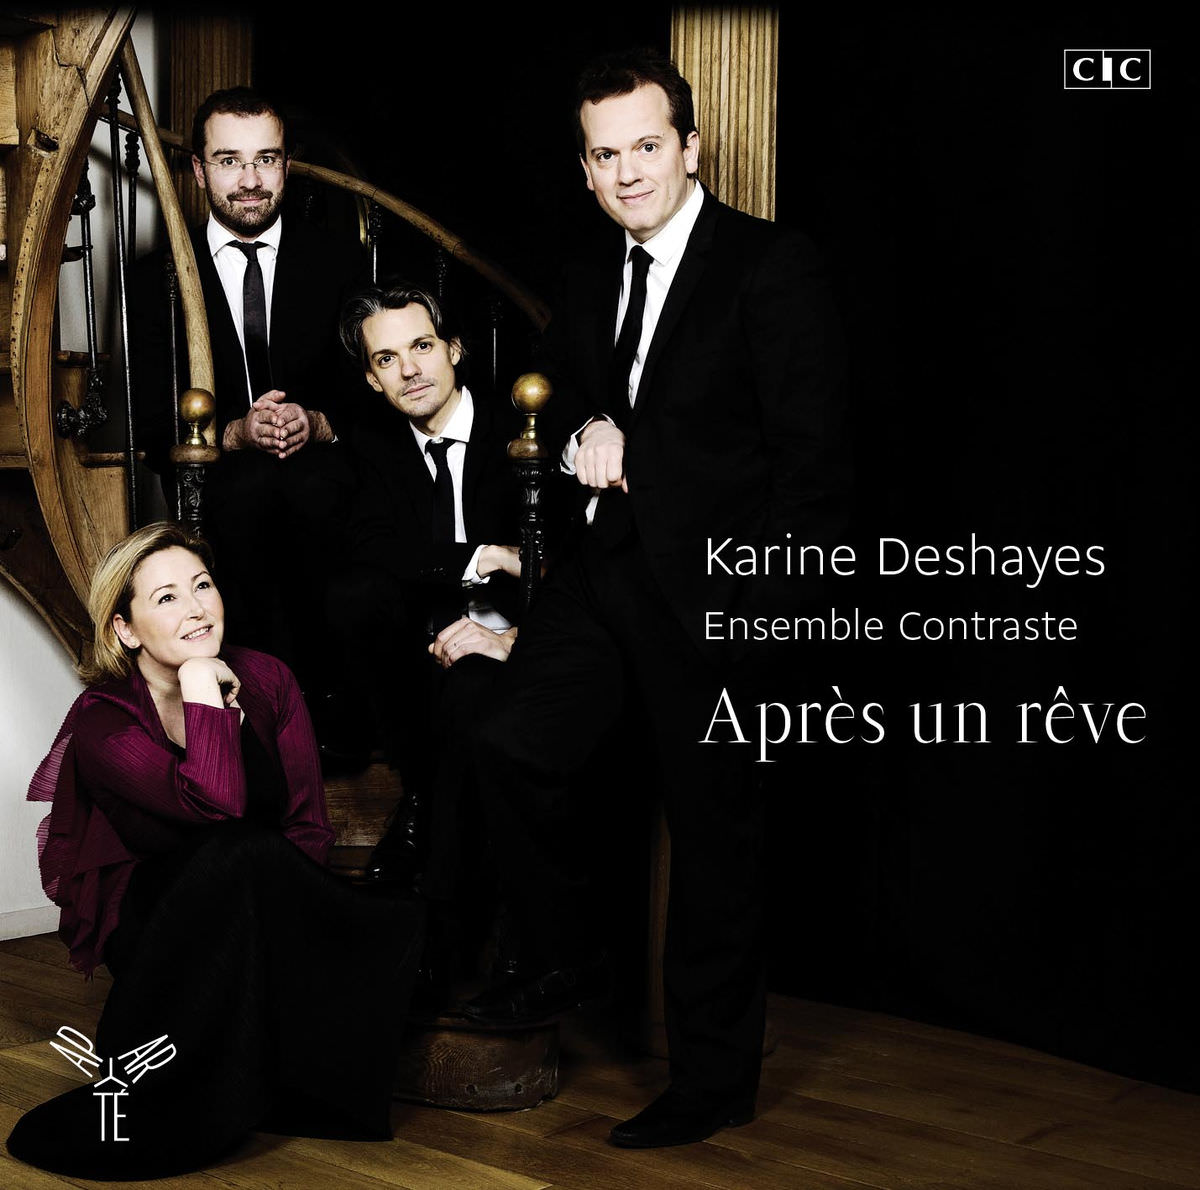 Karine Deshayes & Ensemble Contraste - Apres un reve (2015) [FLAC 24bit/96kHz]